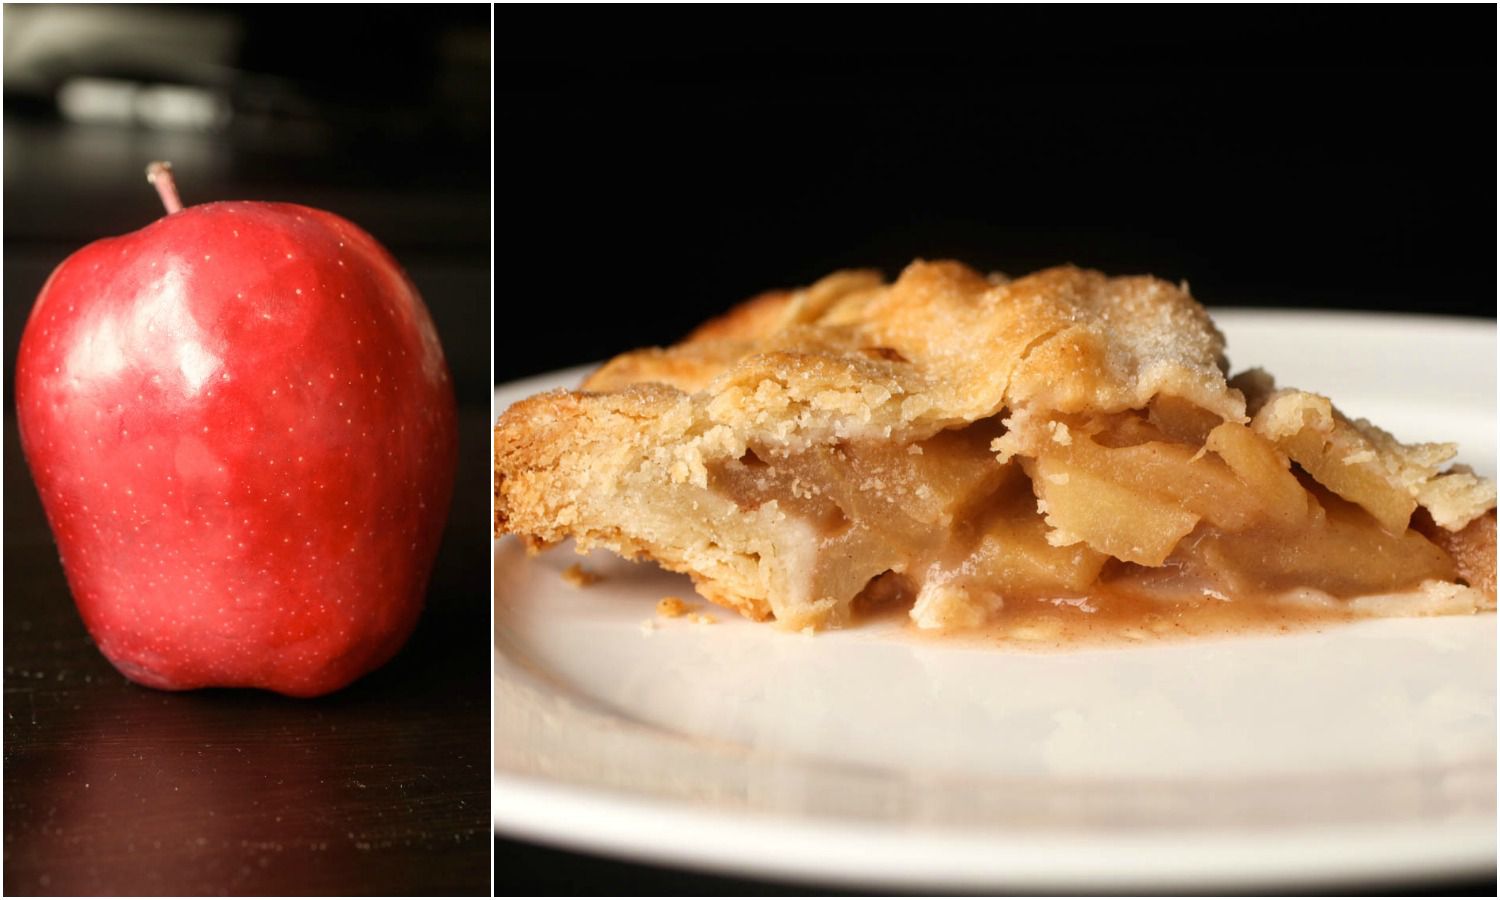 拼贴的美味可口的红苹果旁边一片馅饼用美味可口的红苹果